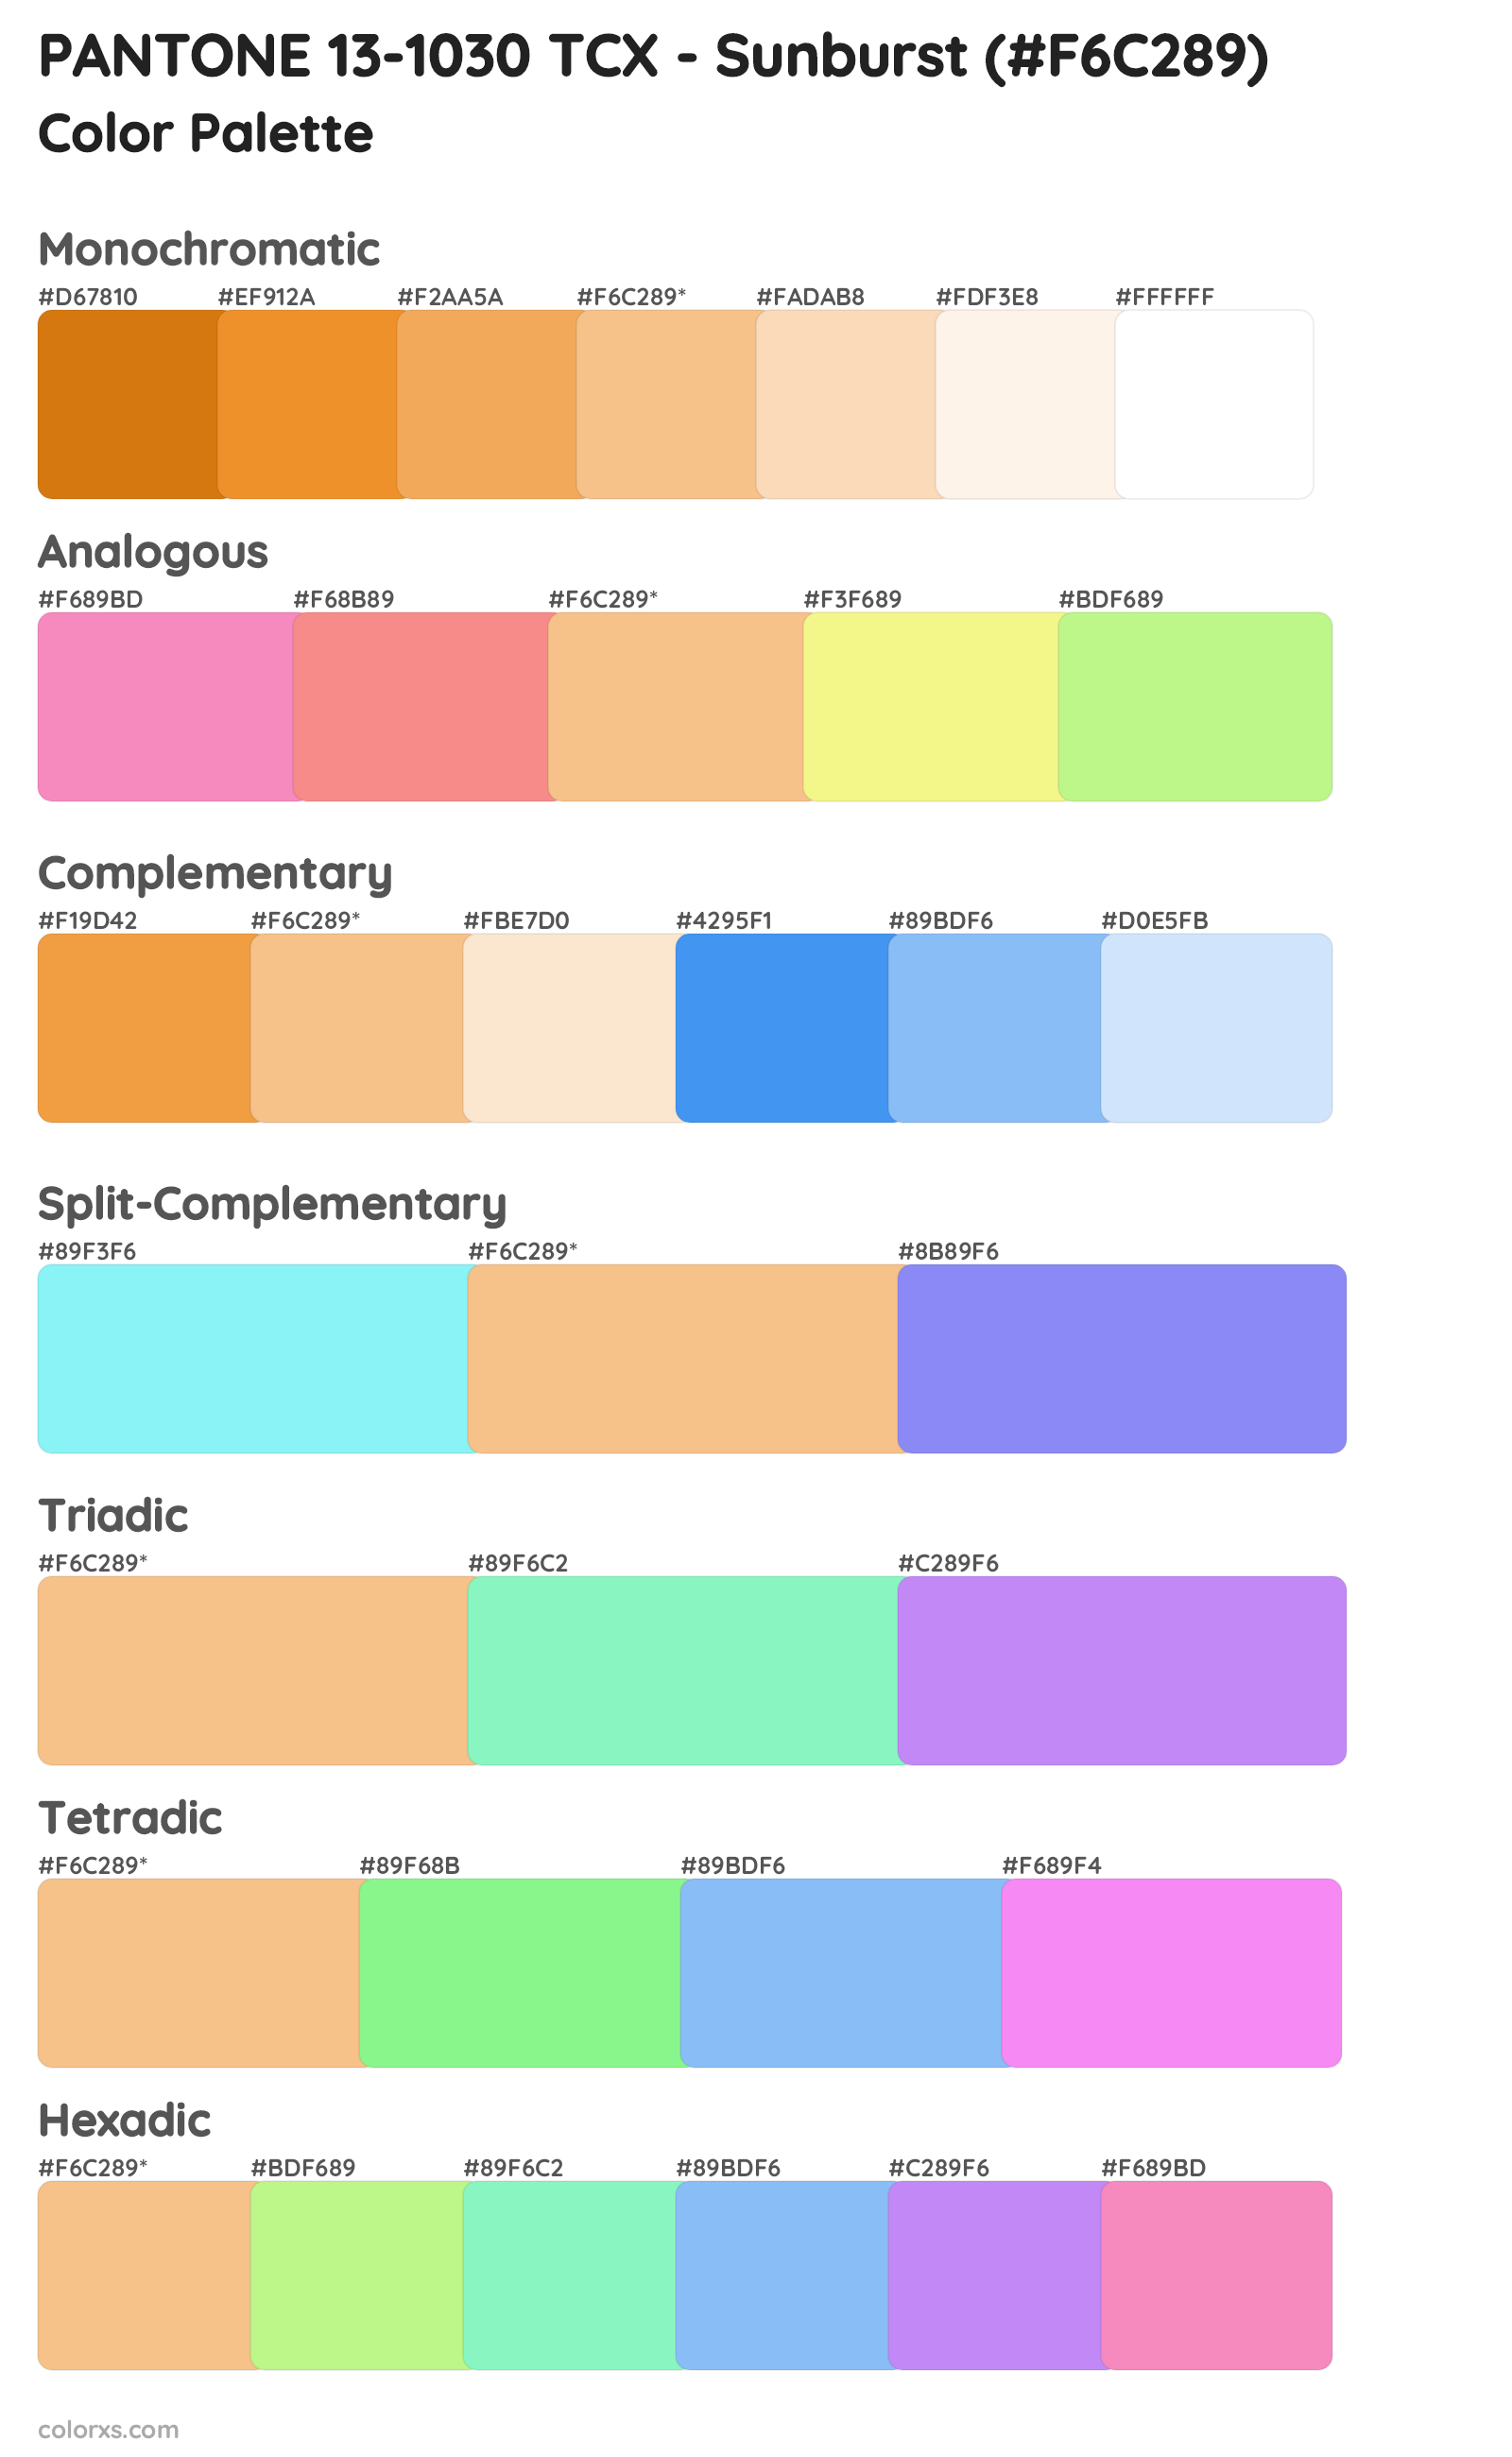 PANTONE 13-1030 TCX - Sunburst Color Scheme Palettes